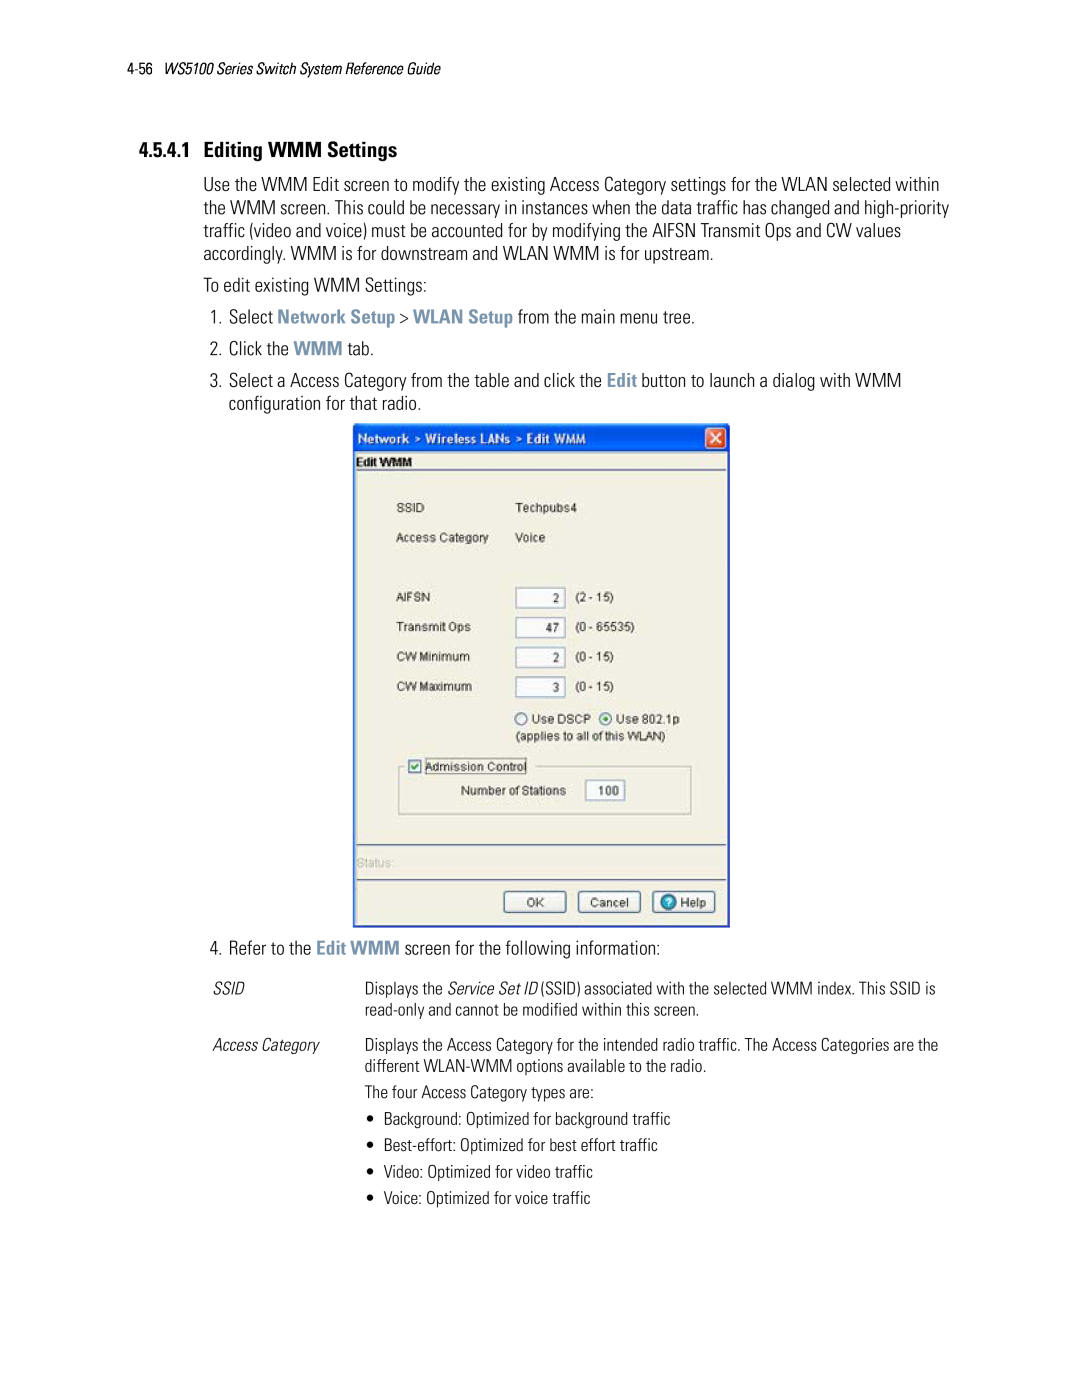 Motorola WS5100 manual 4.5.4.1Editing WMM Settings 